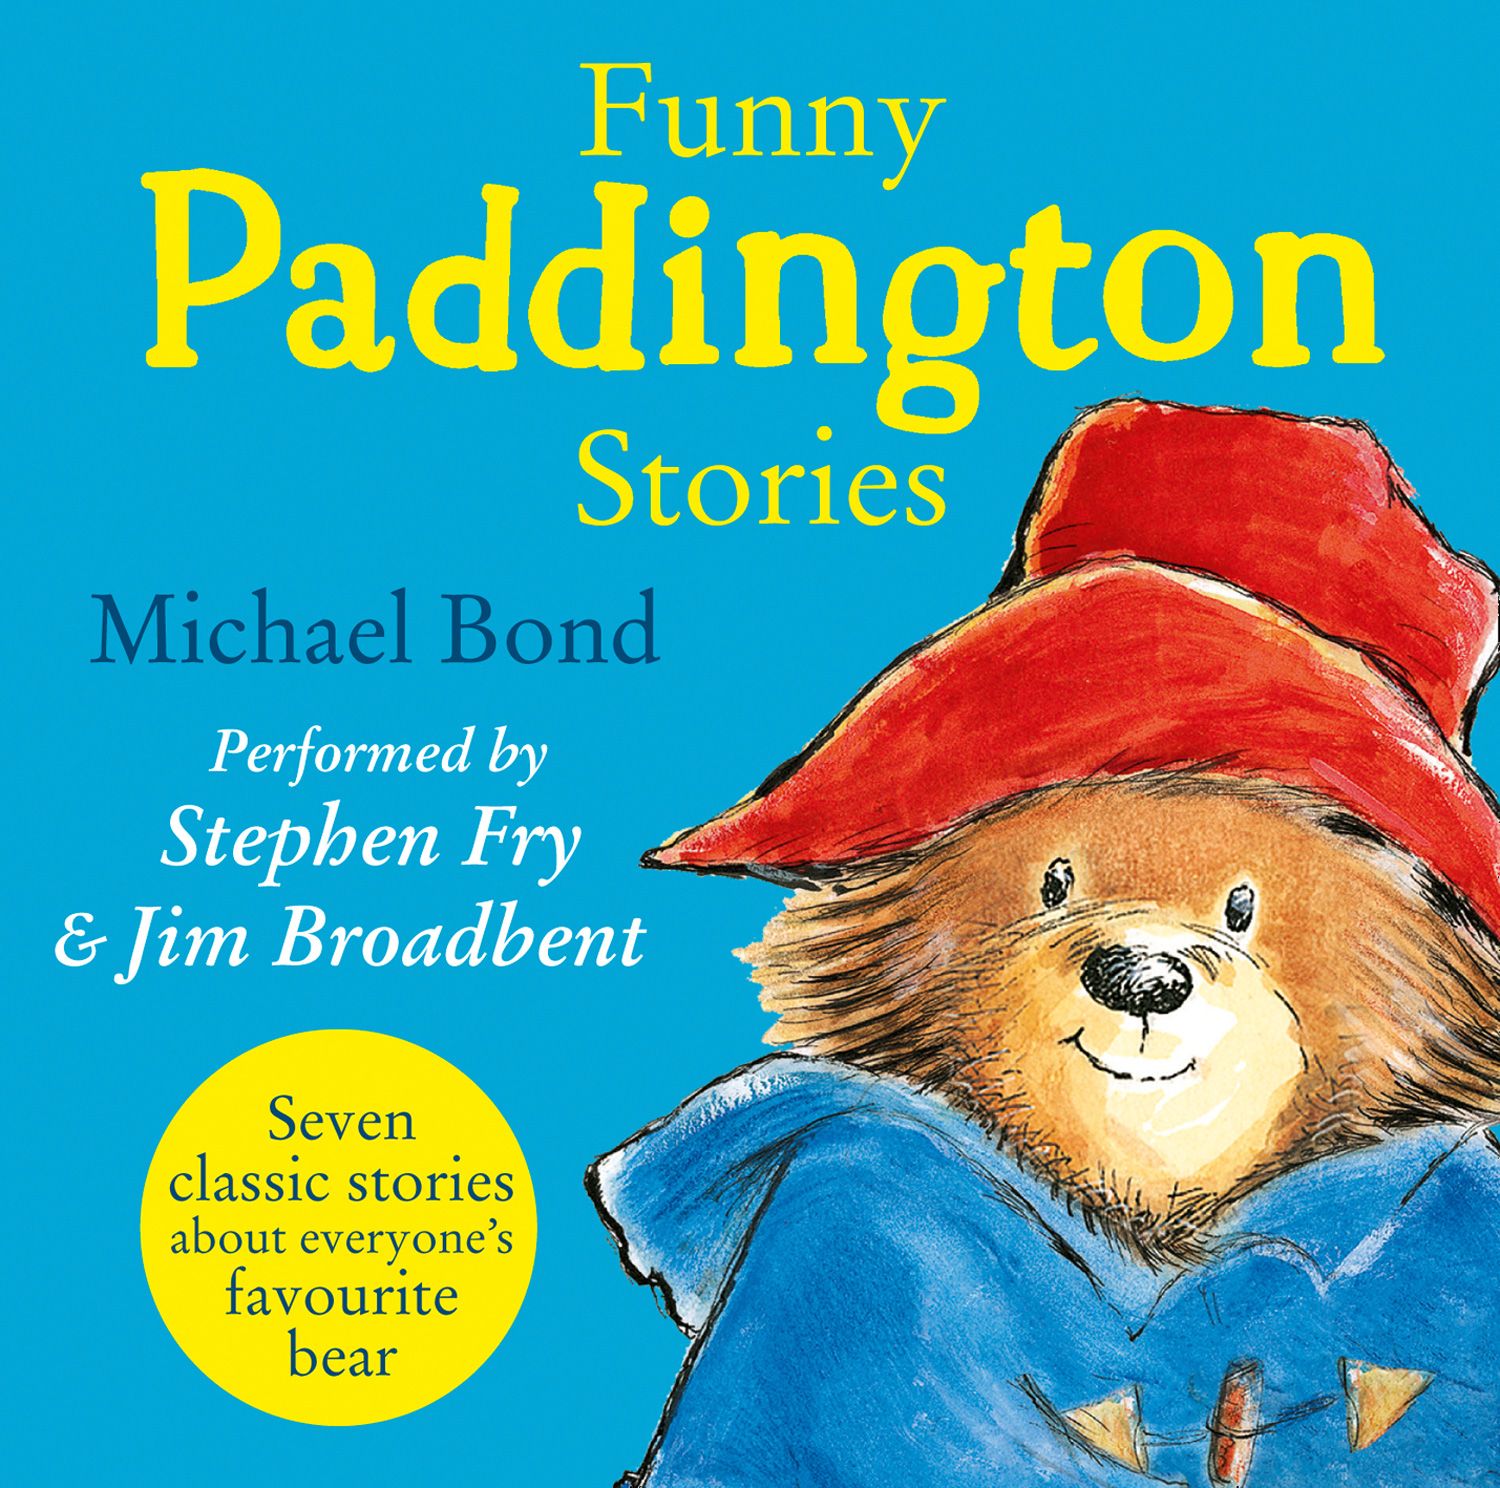 The Story of Paddington Bear